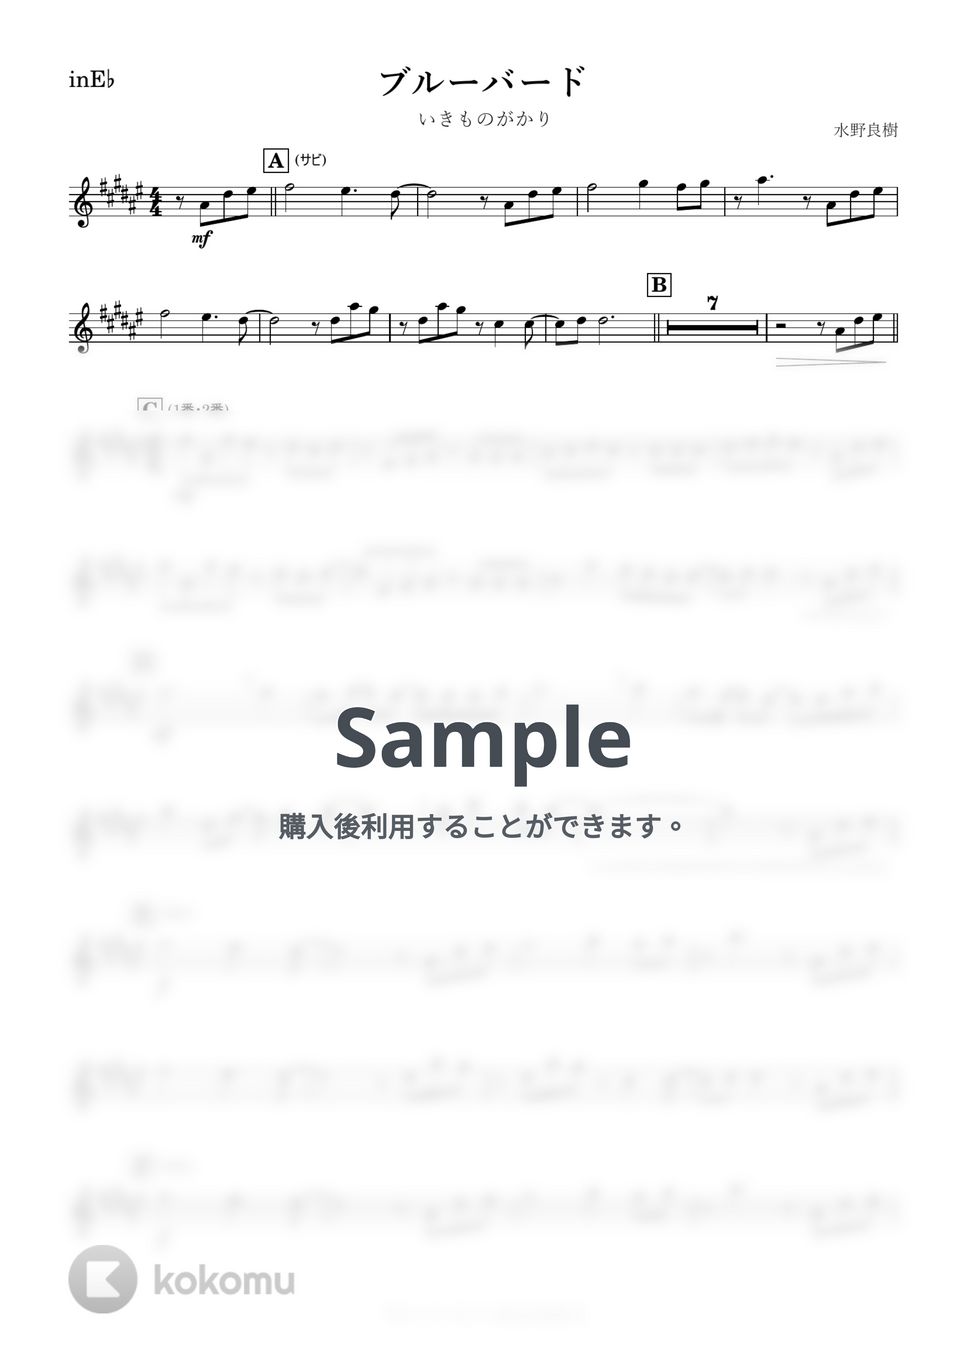 いきものがかり - ブルーバード (E♭) by kanamusic